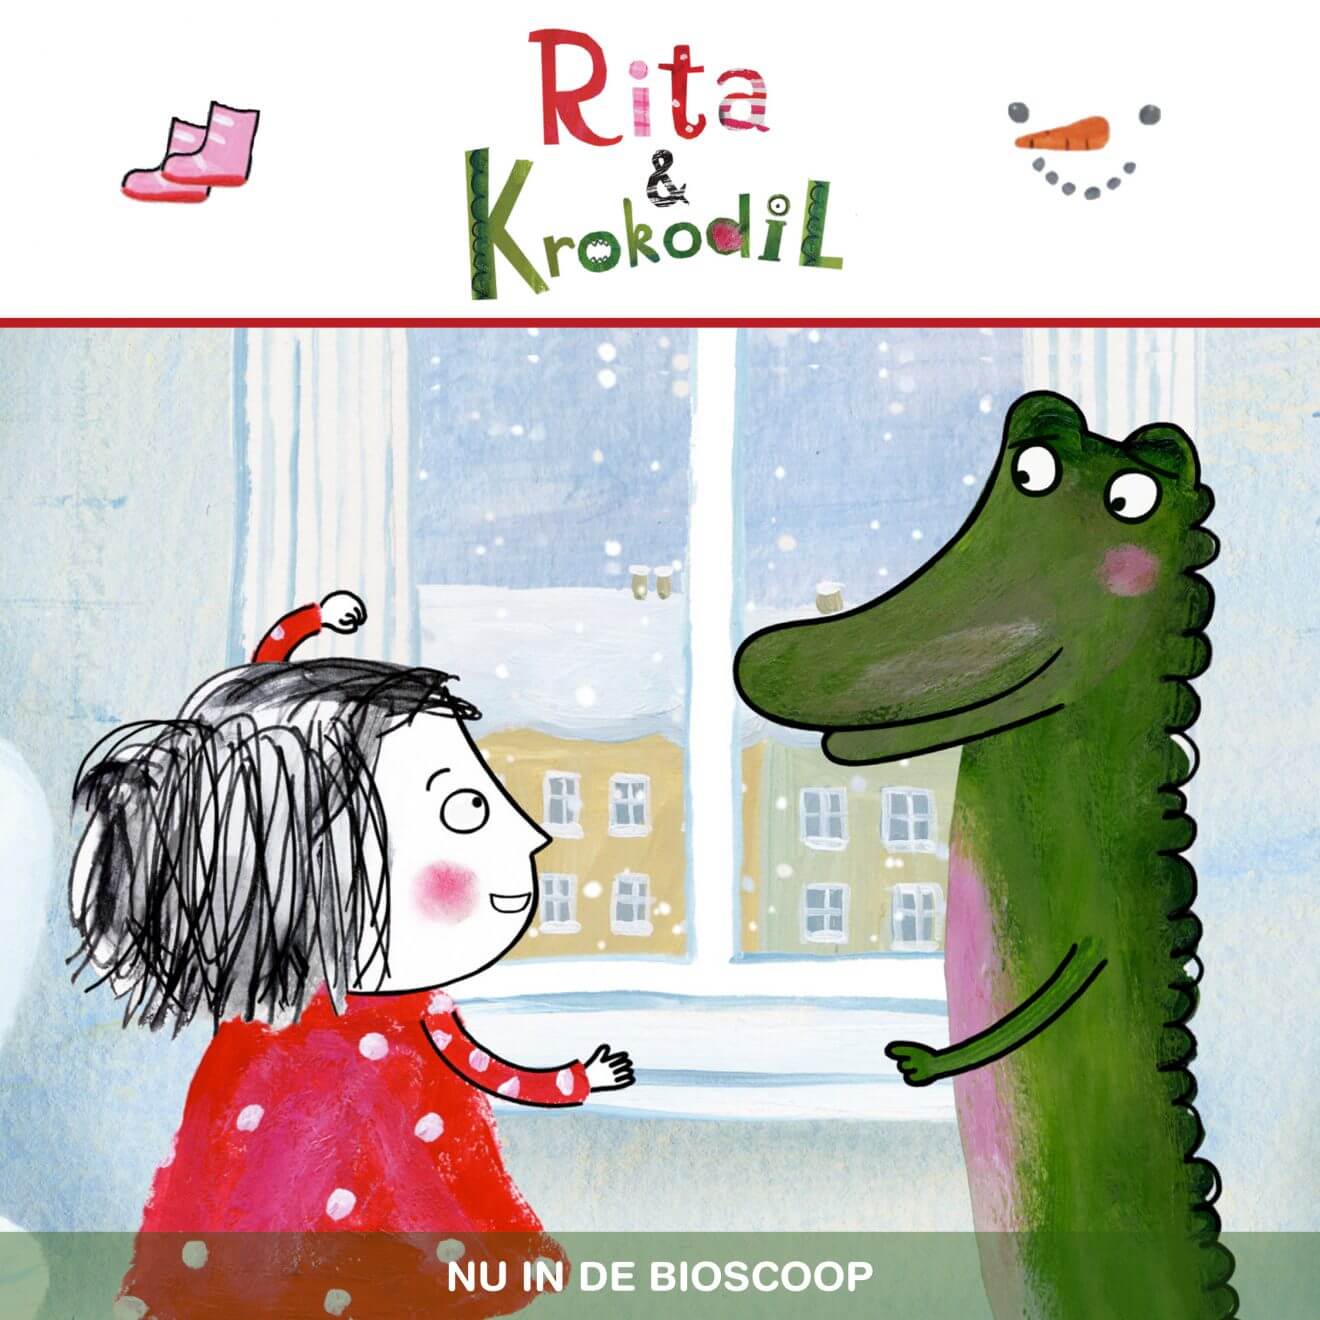 Filmtip voor kerst: Rita & Krokodil (2+)